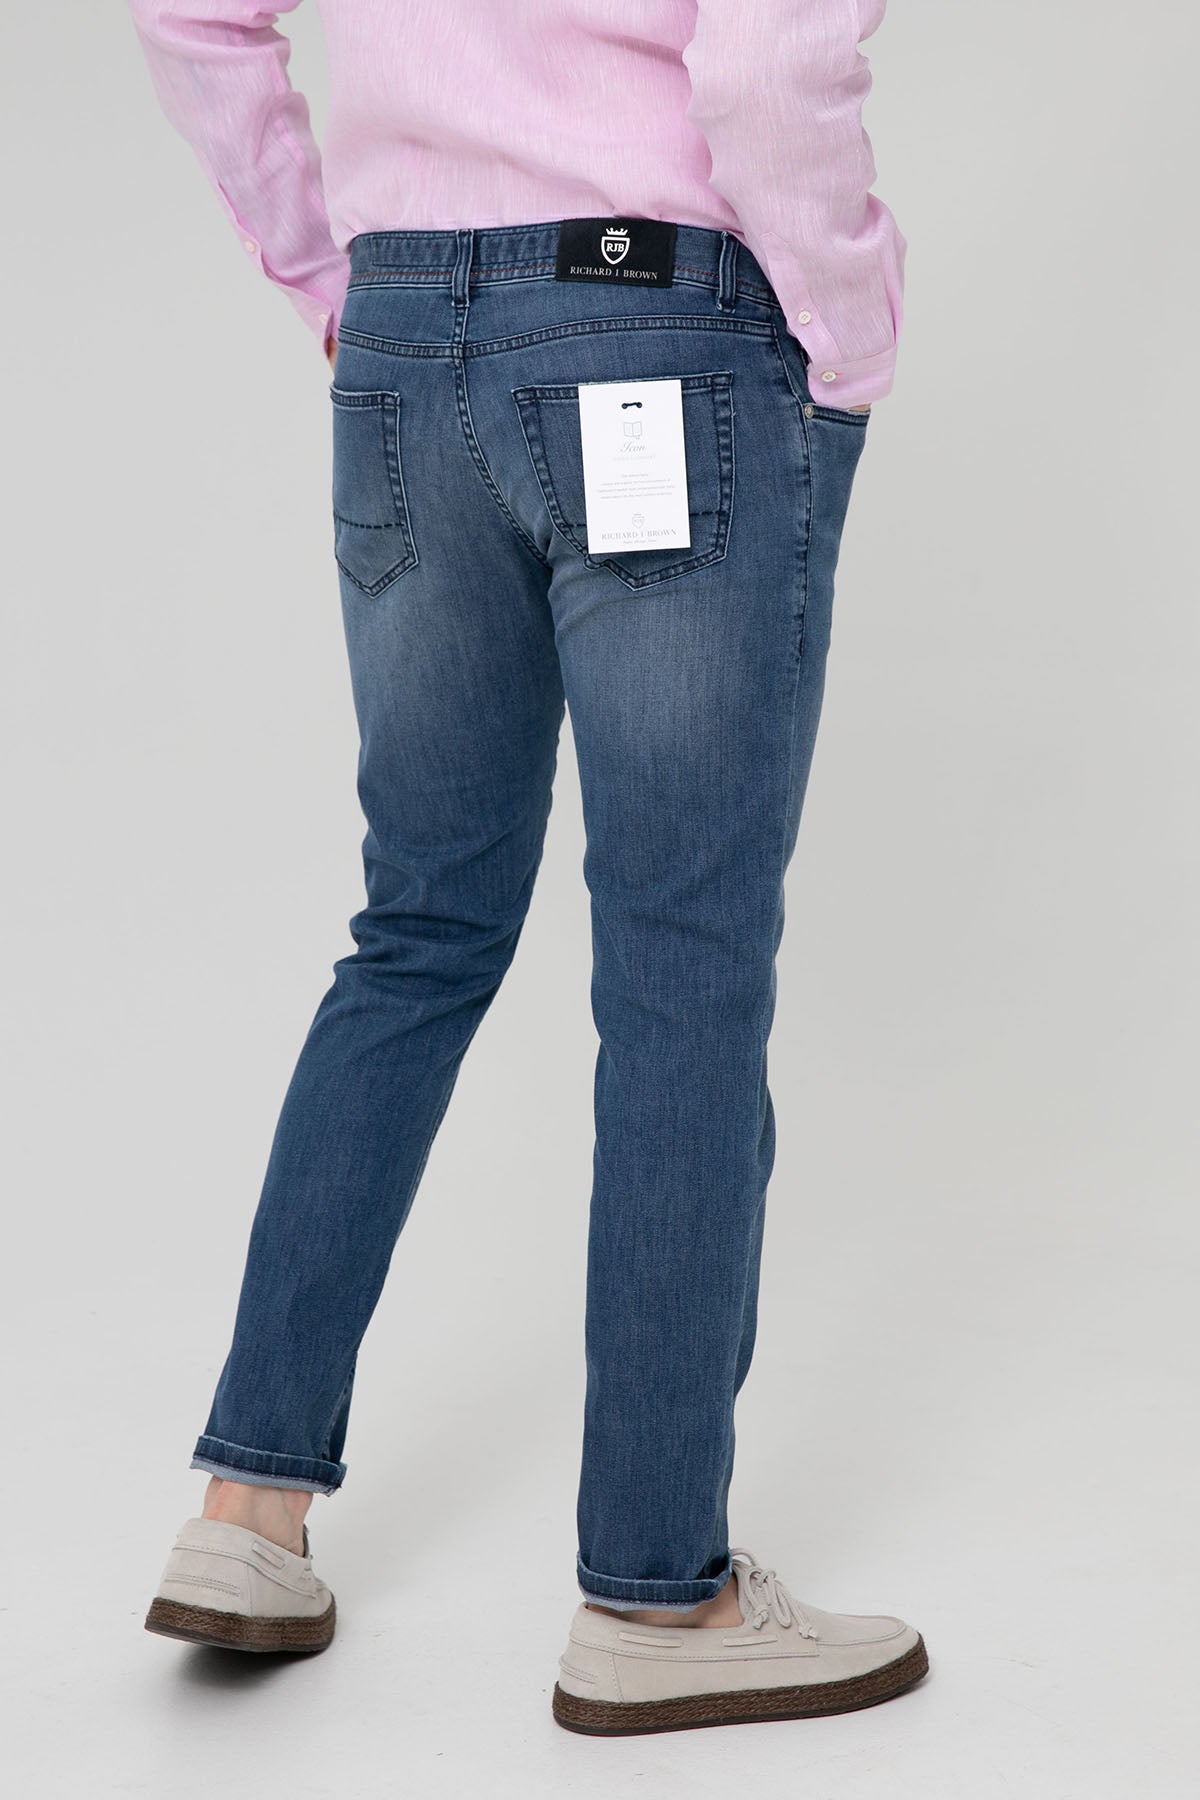 Richard J. Brown Tokyo Slim Fit Jeans-Libas Trendy Fashion Store